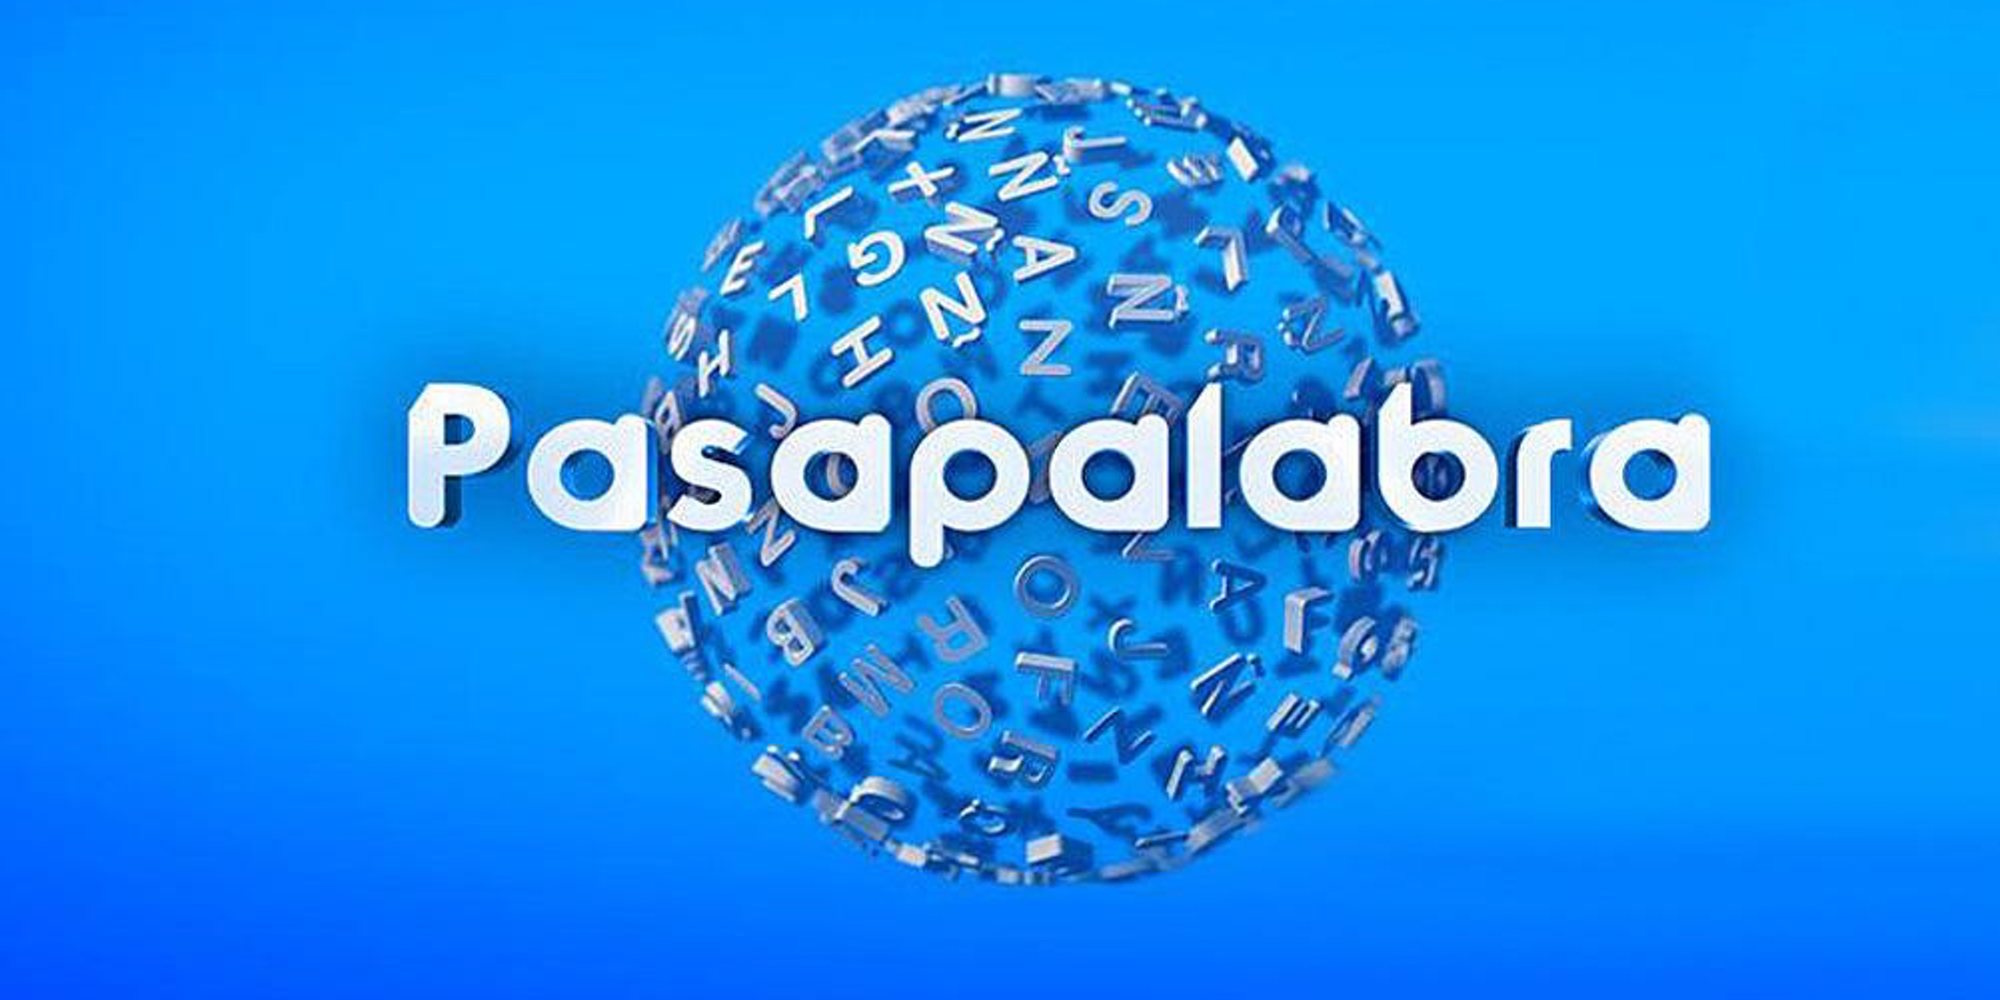 'Pasapalabra' vuelve en Antena 3 tras su salida de Telecinco